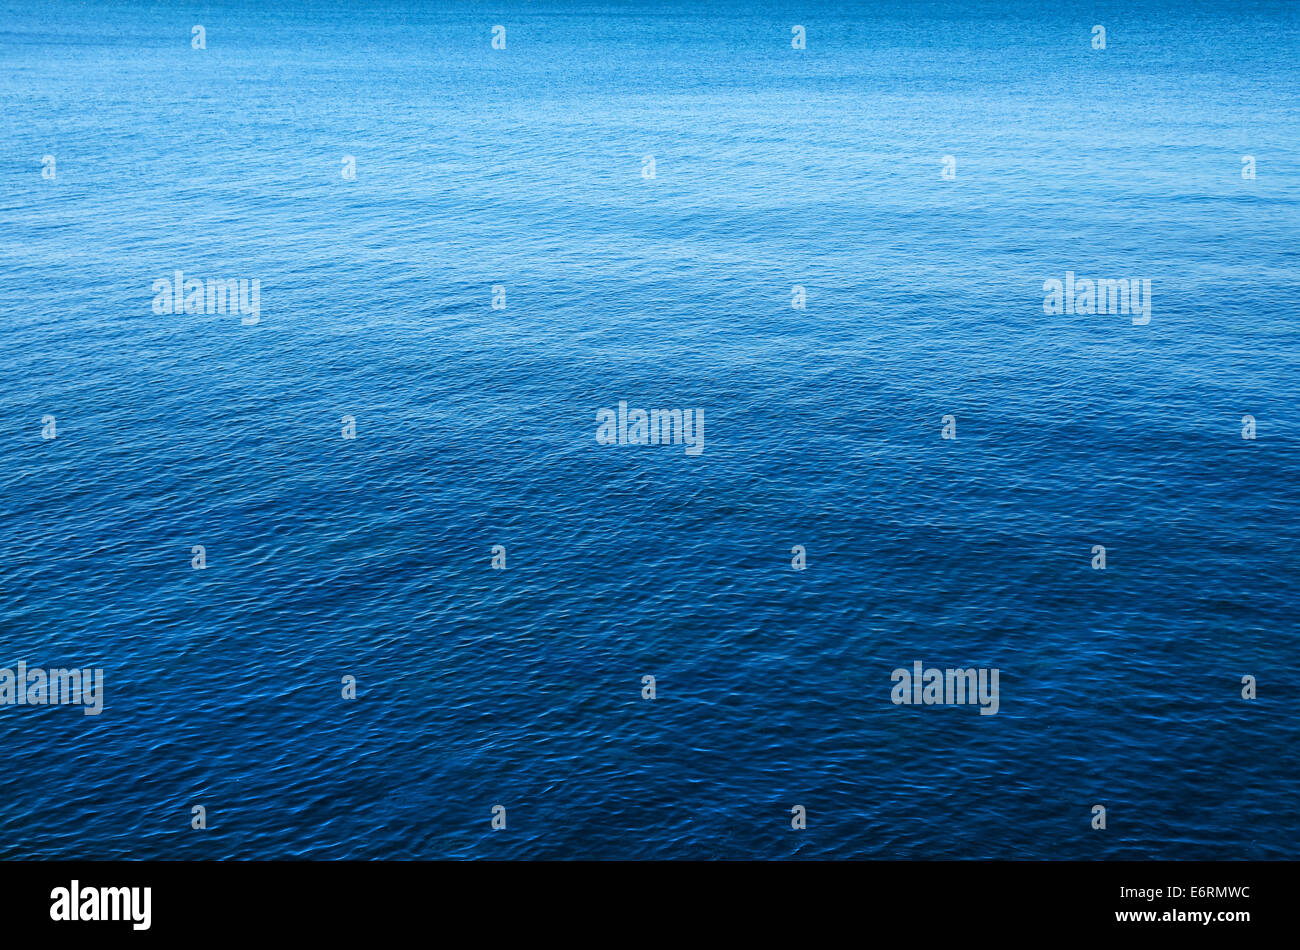 Hintergrundbild von einem ruhigen und friedlichen blauen Meer Stockfoto